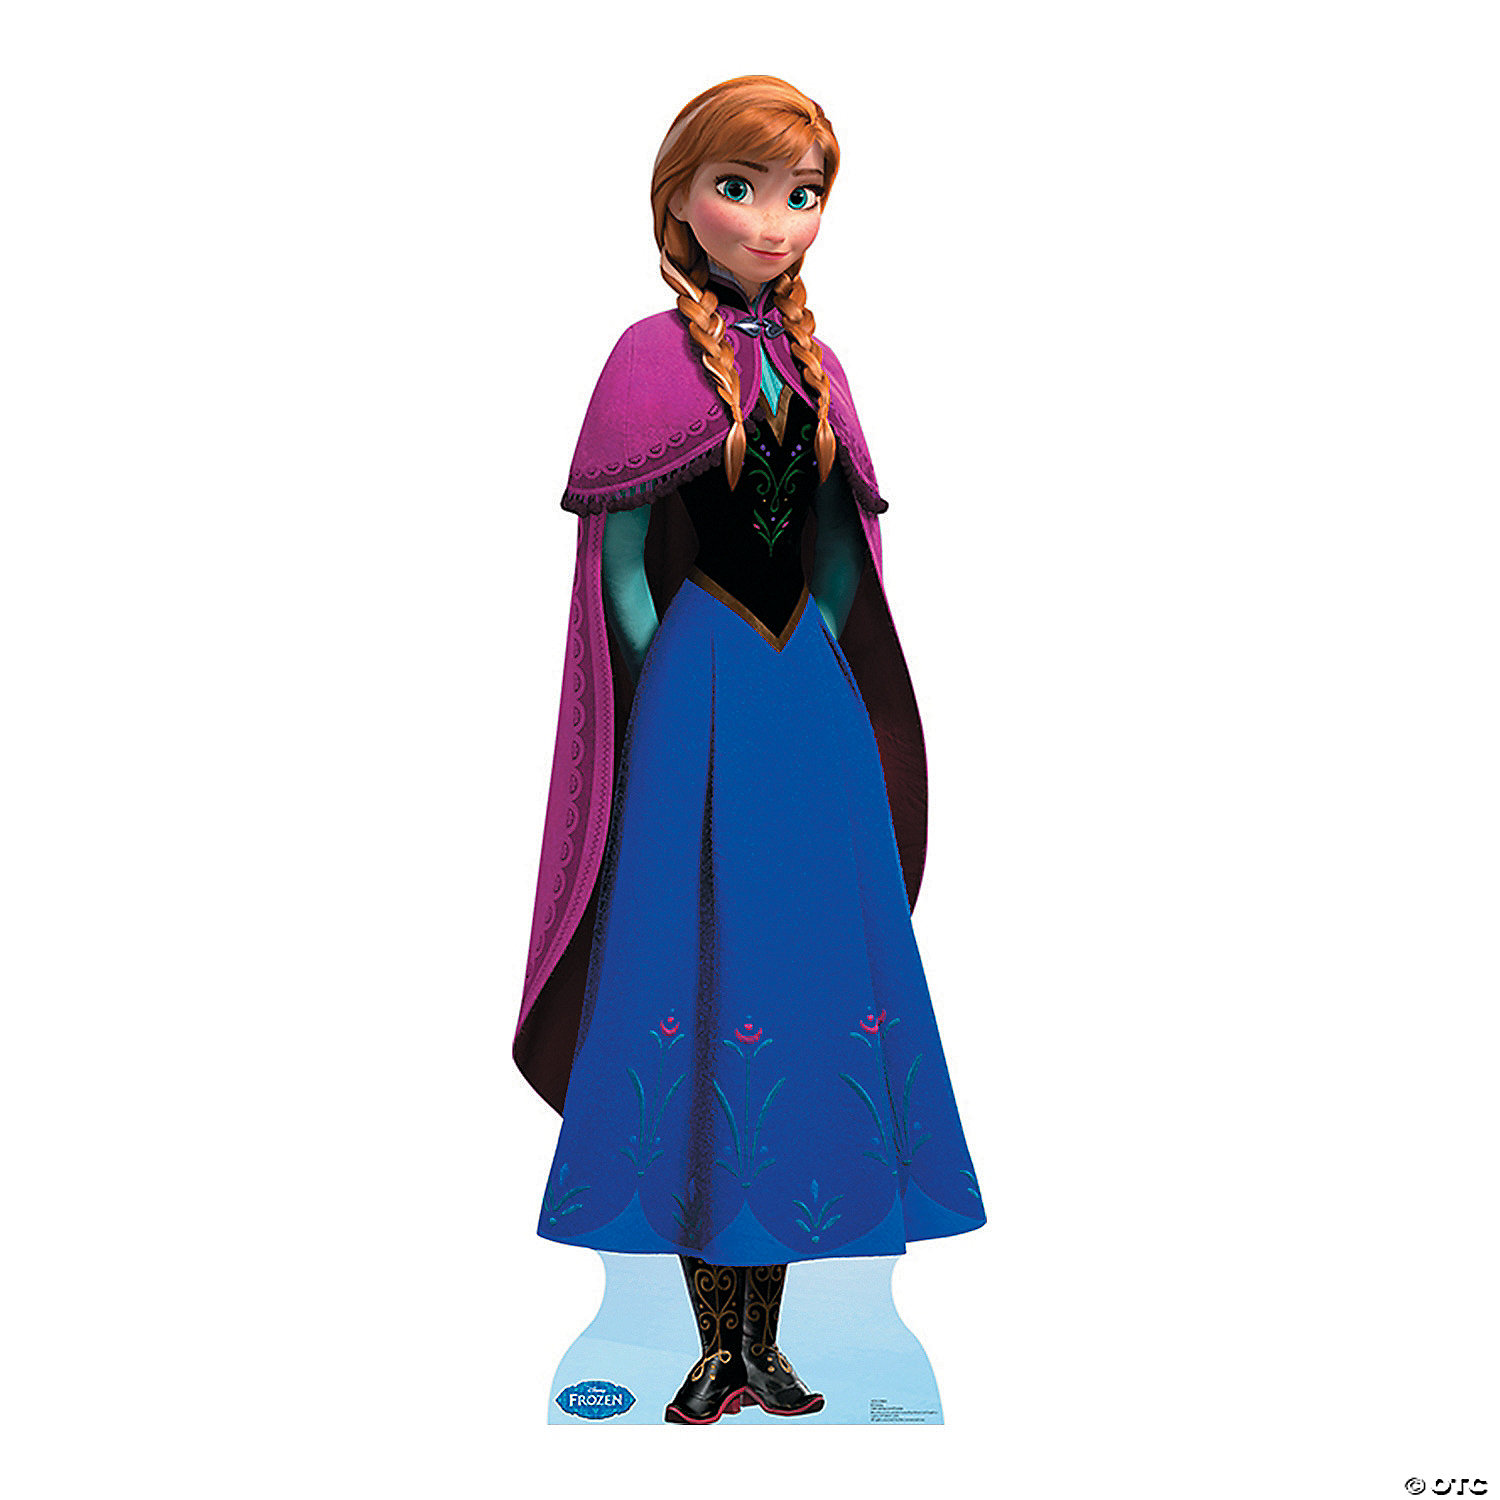 Graag gedaan achterstalligheid Patch Disney Frozen Anna Cardboard Stand-Up | Oriental Trading